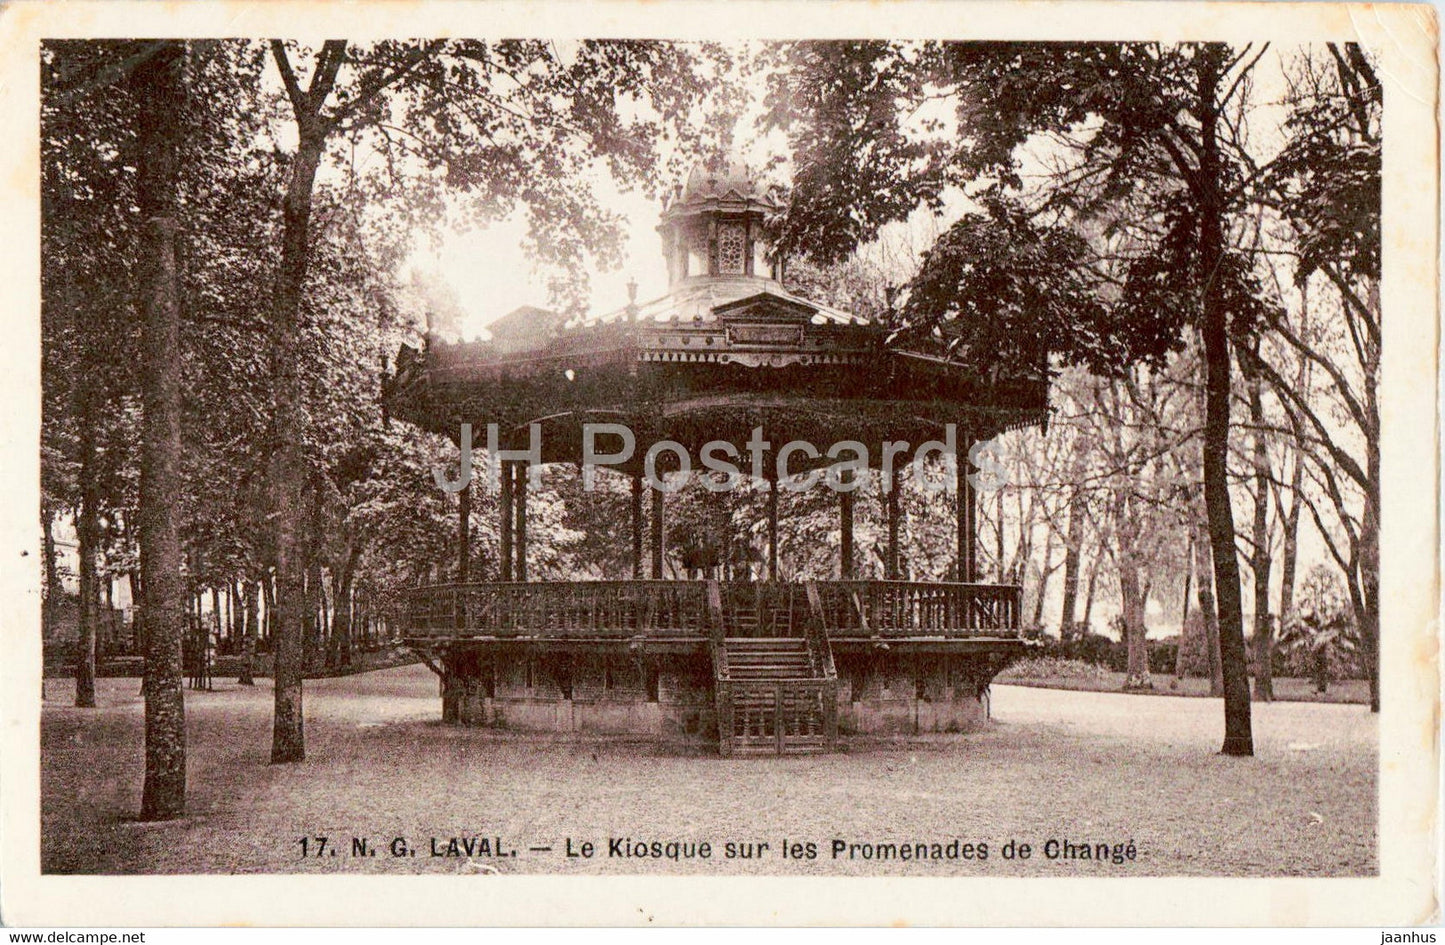 Laval - Le Kiosque sur les Promenades de Change - 17 - old postcard - 1908 - France - used - JH Postcards